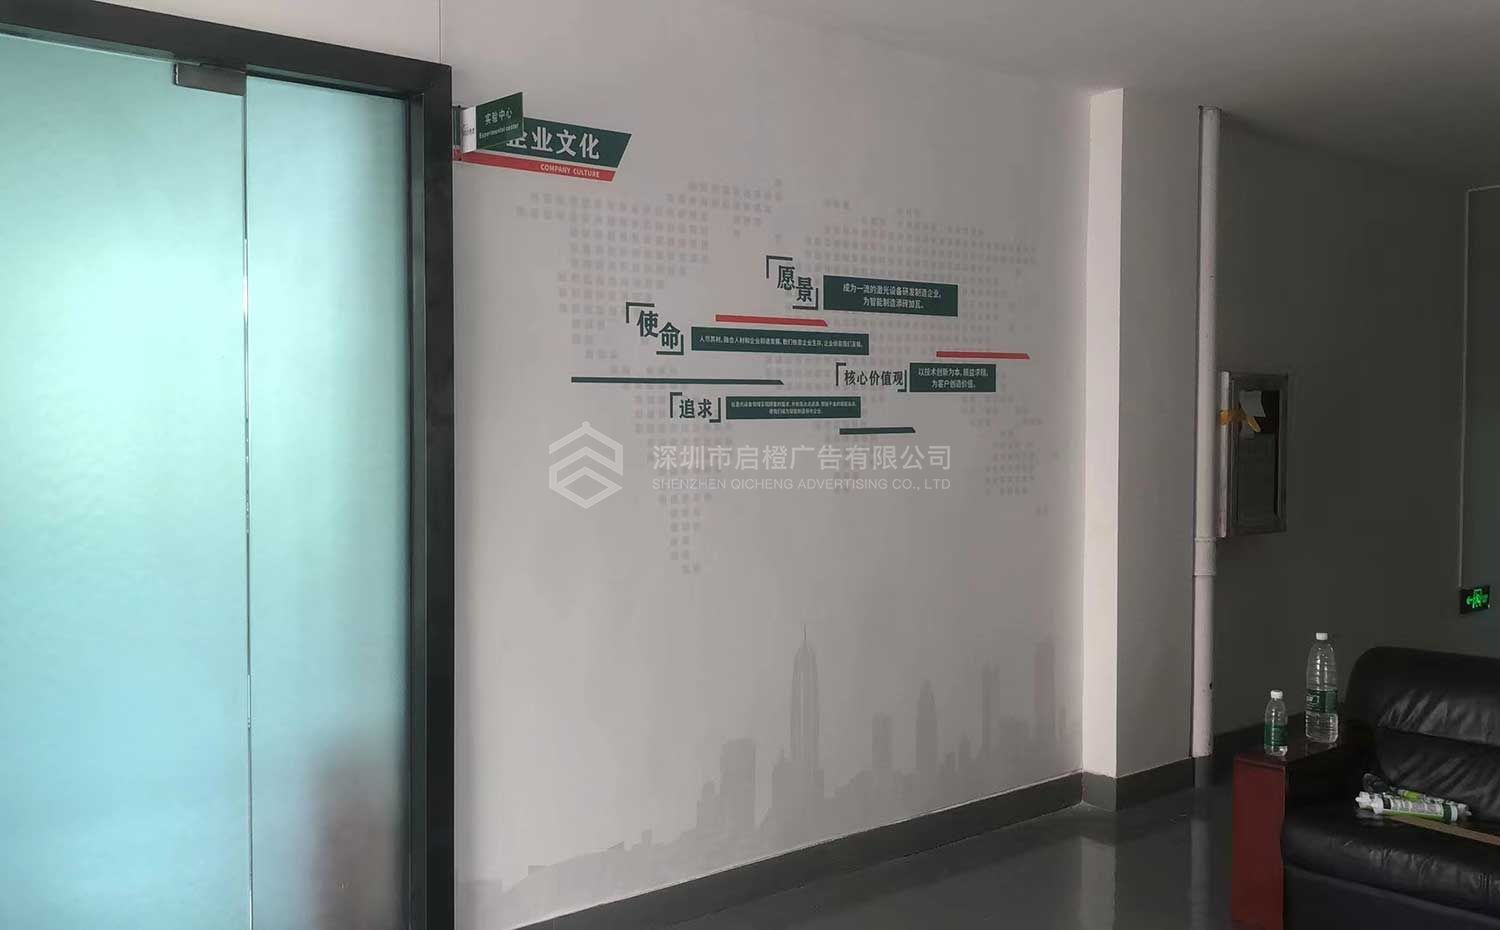 一零六四激光技术有限公司文化墙上墙案例效果图片(图5)